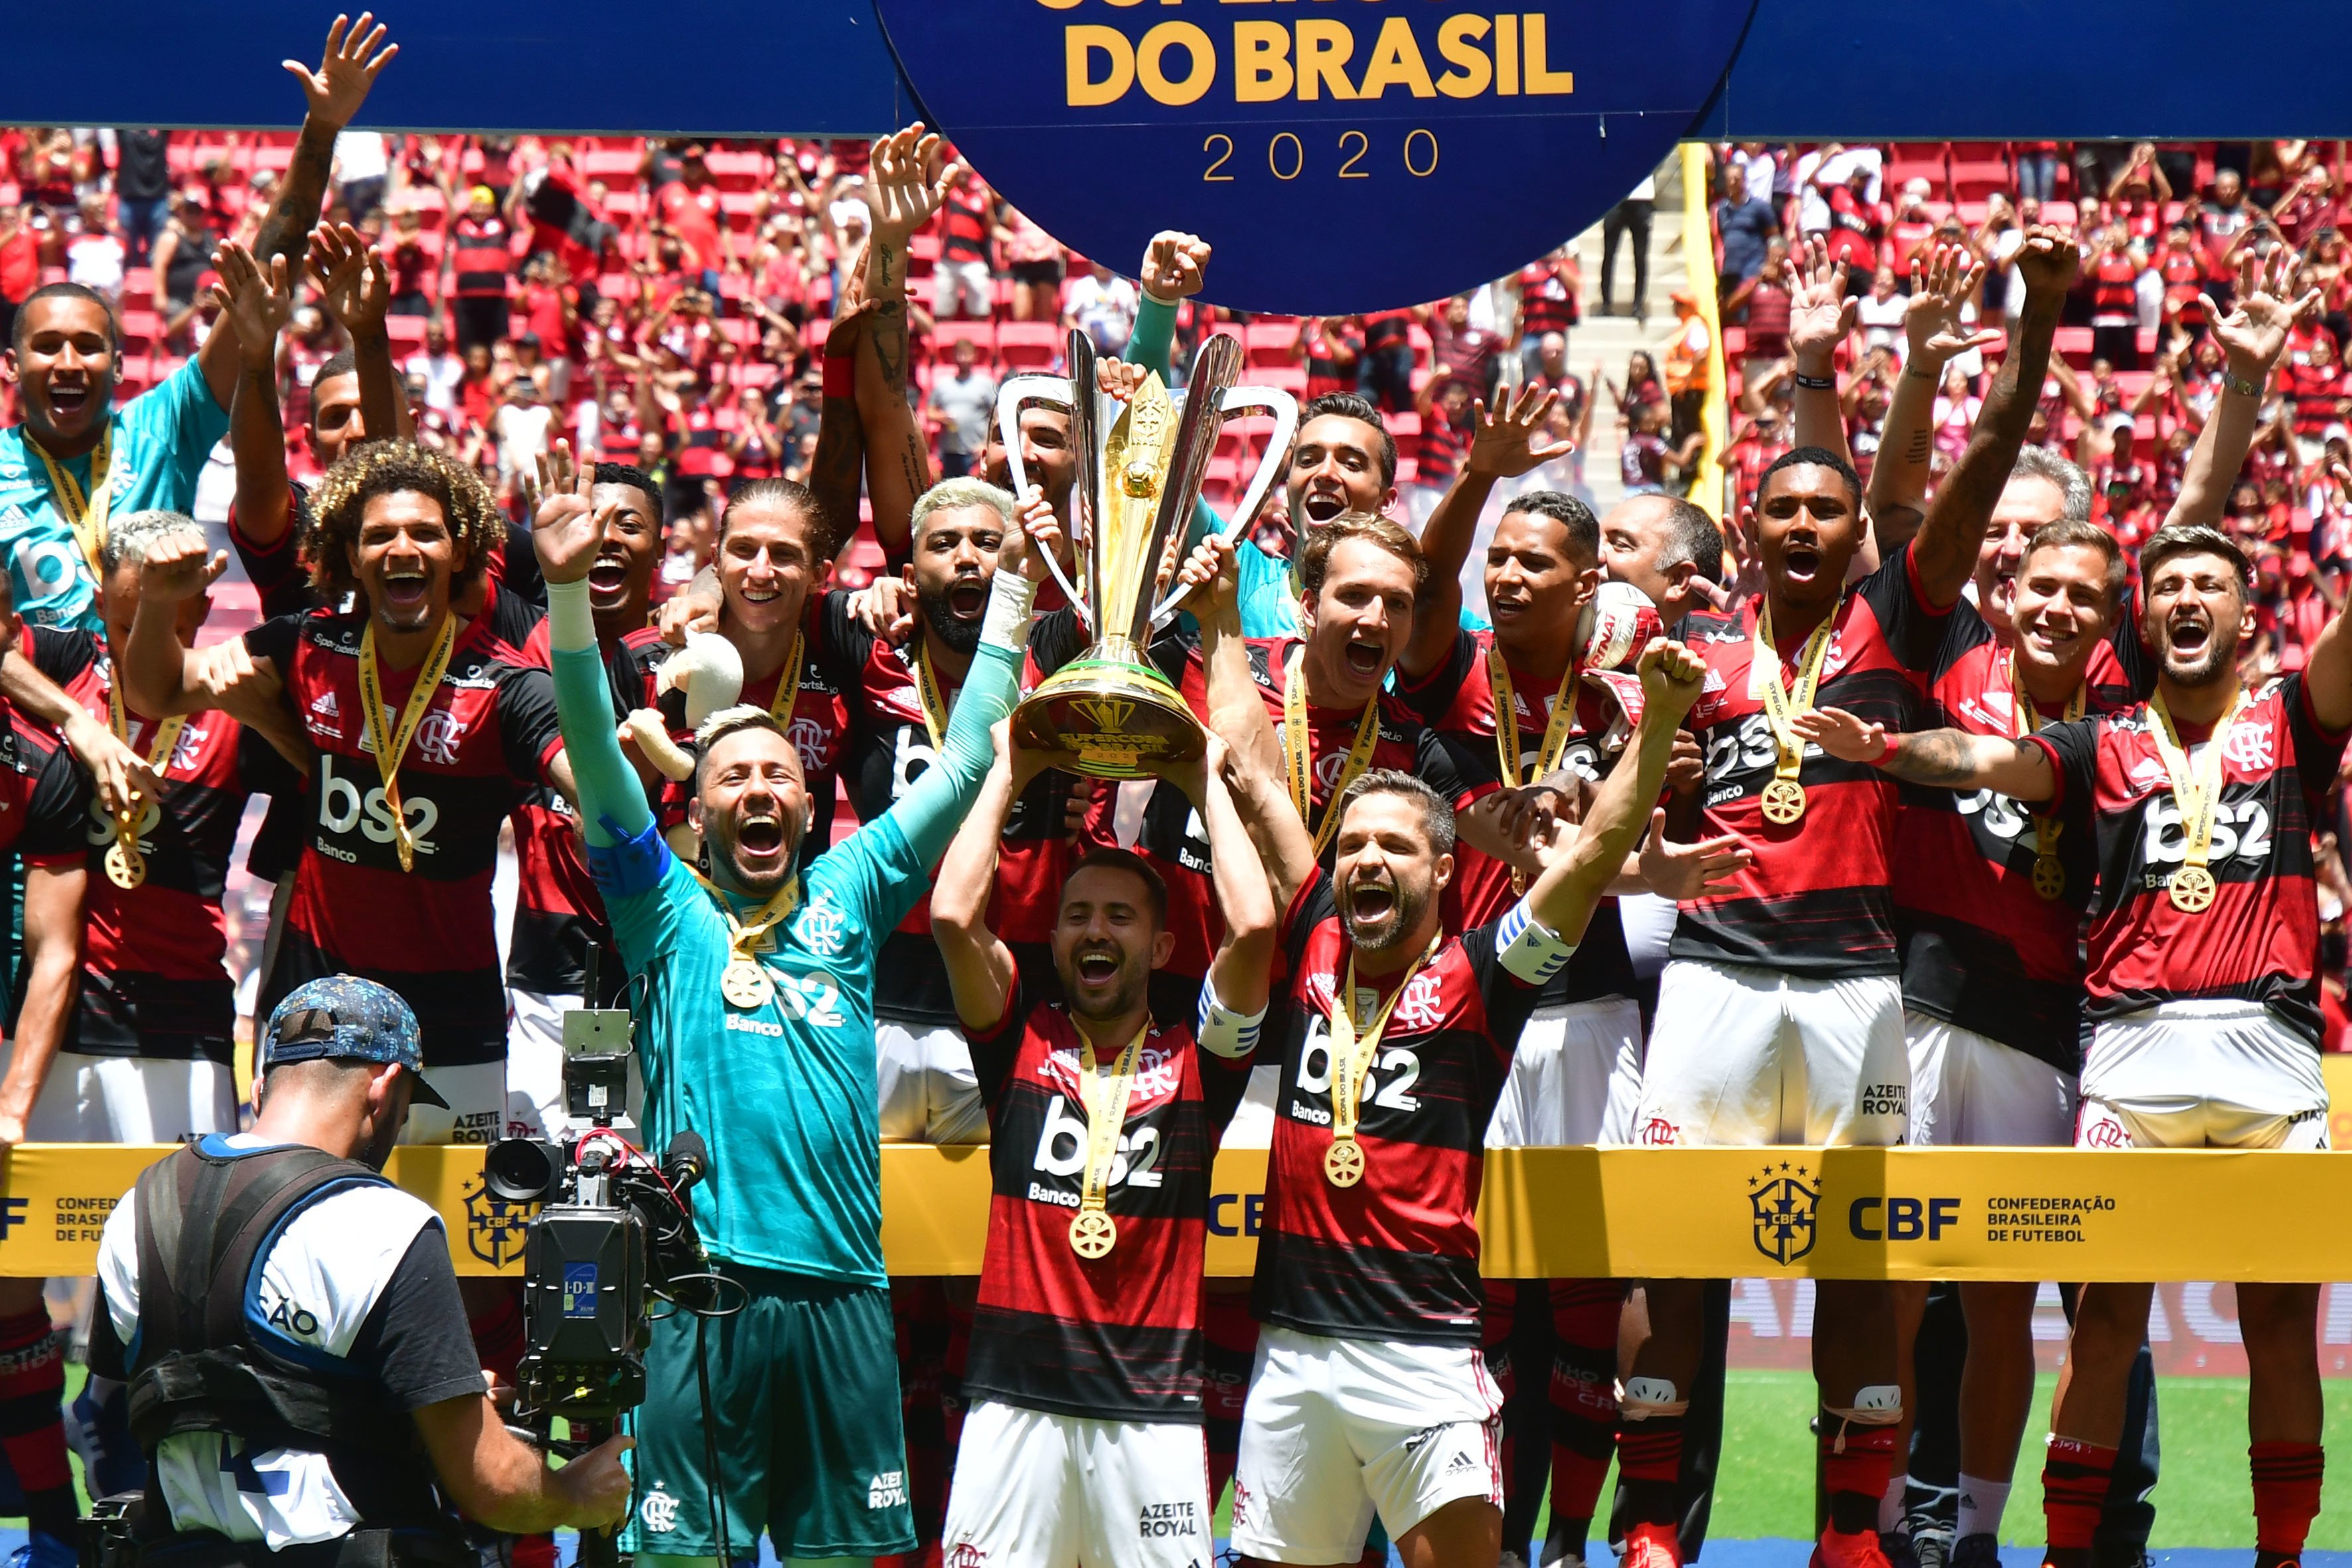 Com os recentes títulos do Campeonato Brasileiro, em 2019, e da Supercopa do Brasil, no último domingo, o Flamengo encostou de vez no Palmeiras no ranking dos clubes brasileiros com mais títulos nacionais. Agora, só duas conquistas separam os dois times. Veja a lista completa!